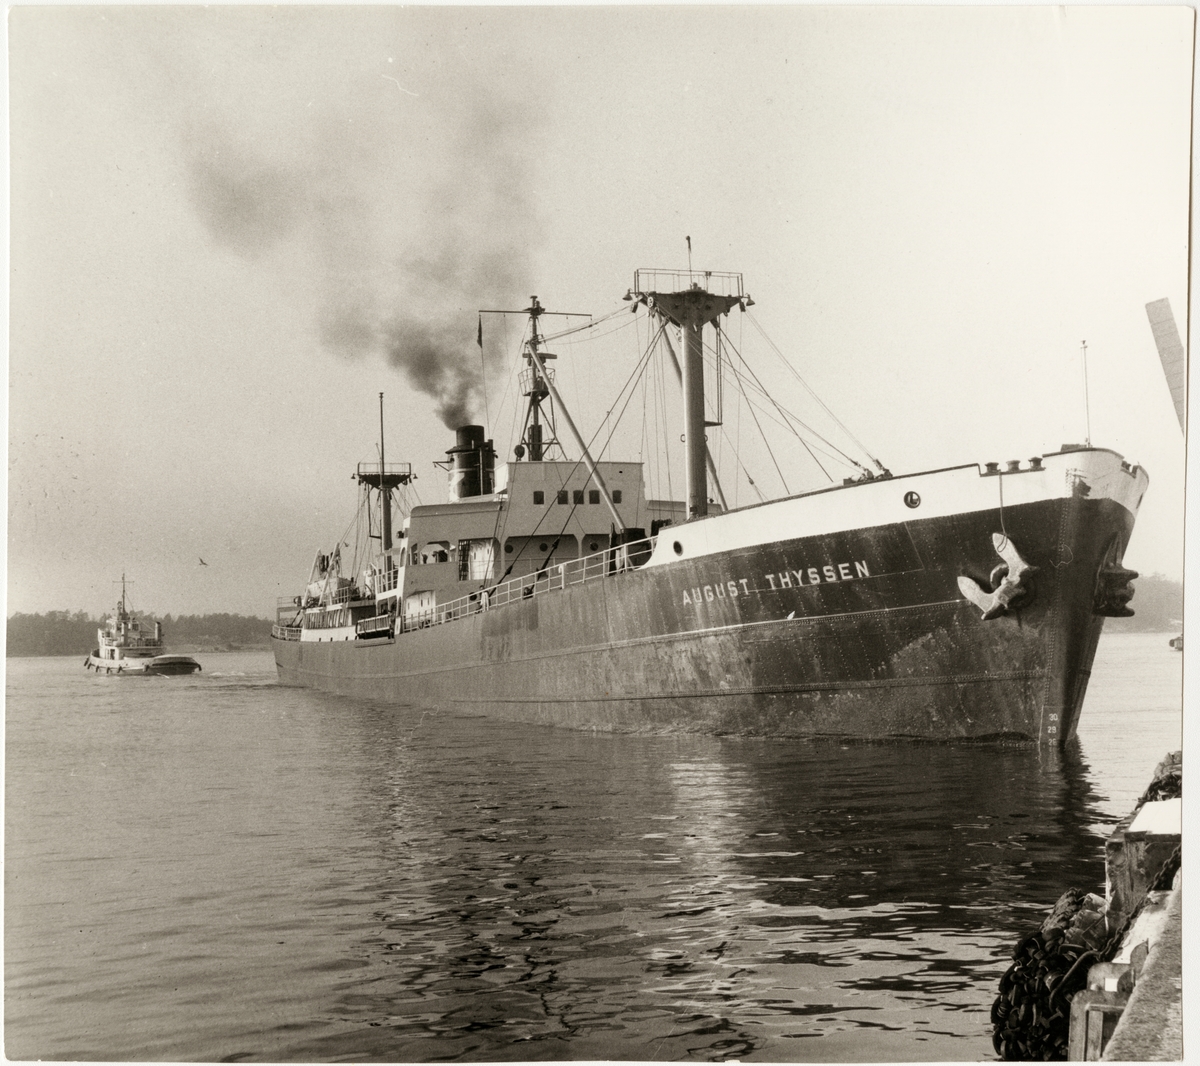 "AUGUST THYSSEN" tungt lastad med malm bogseras av "Isbjörn" från Oxelösunds hamn kaj 1964.